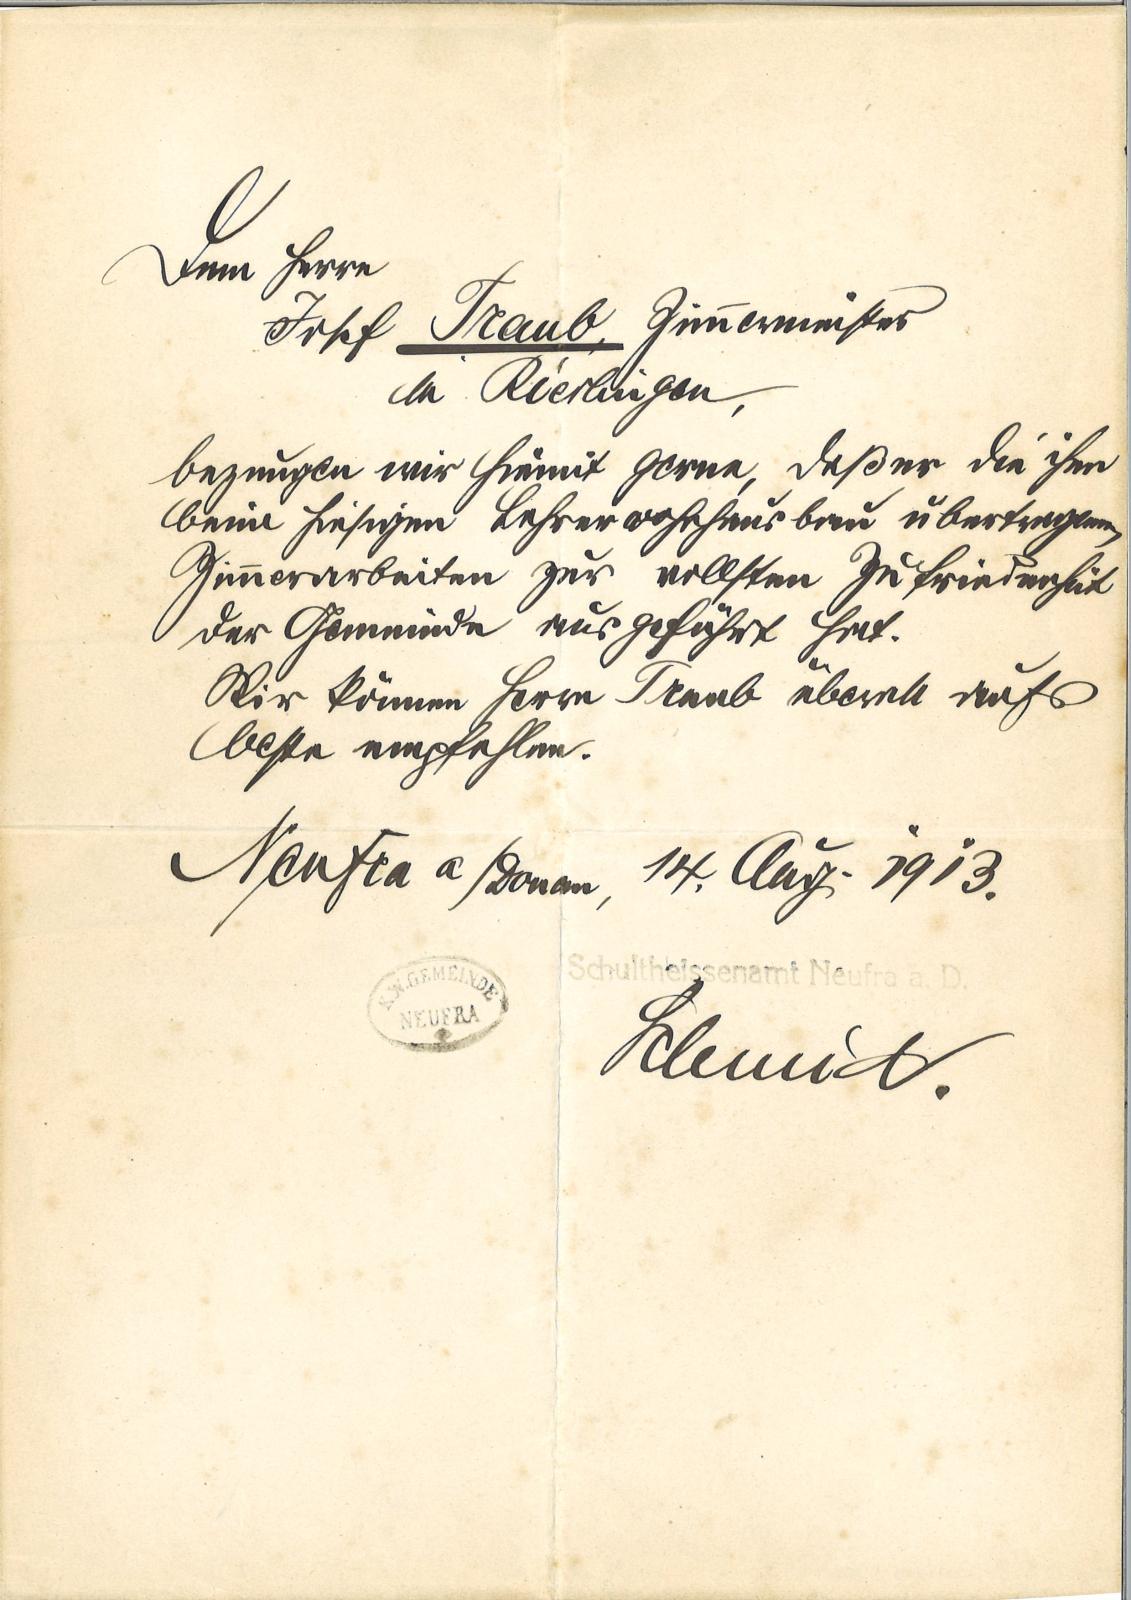 Abbildung eines Empfehlungsschreibens des Bürgermeisters von Neufra für den Zimmermeister Josef Traub aus Riedlingen aus dem Jahre 1913.